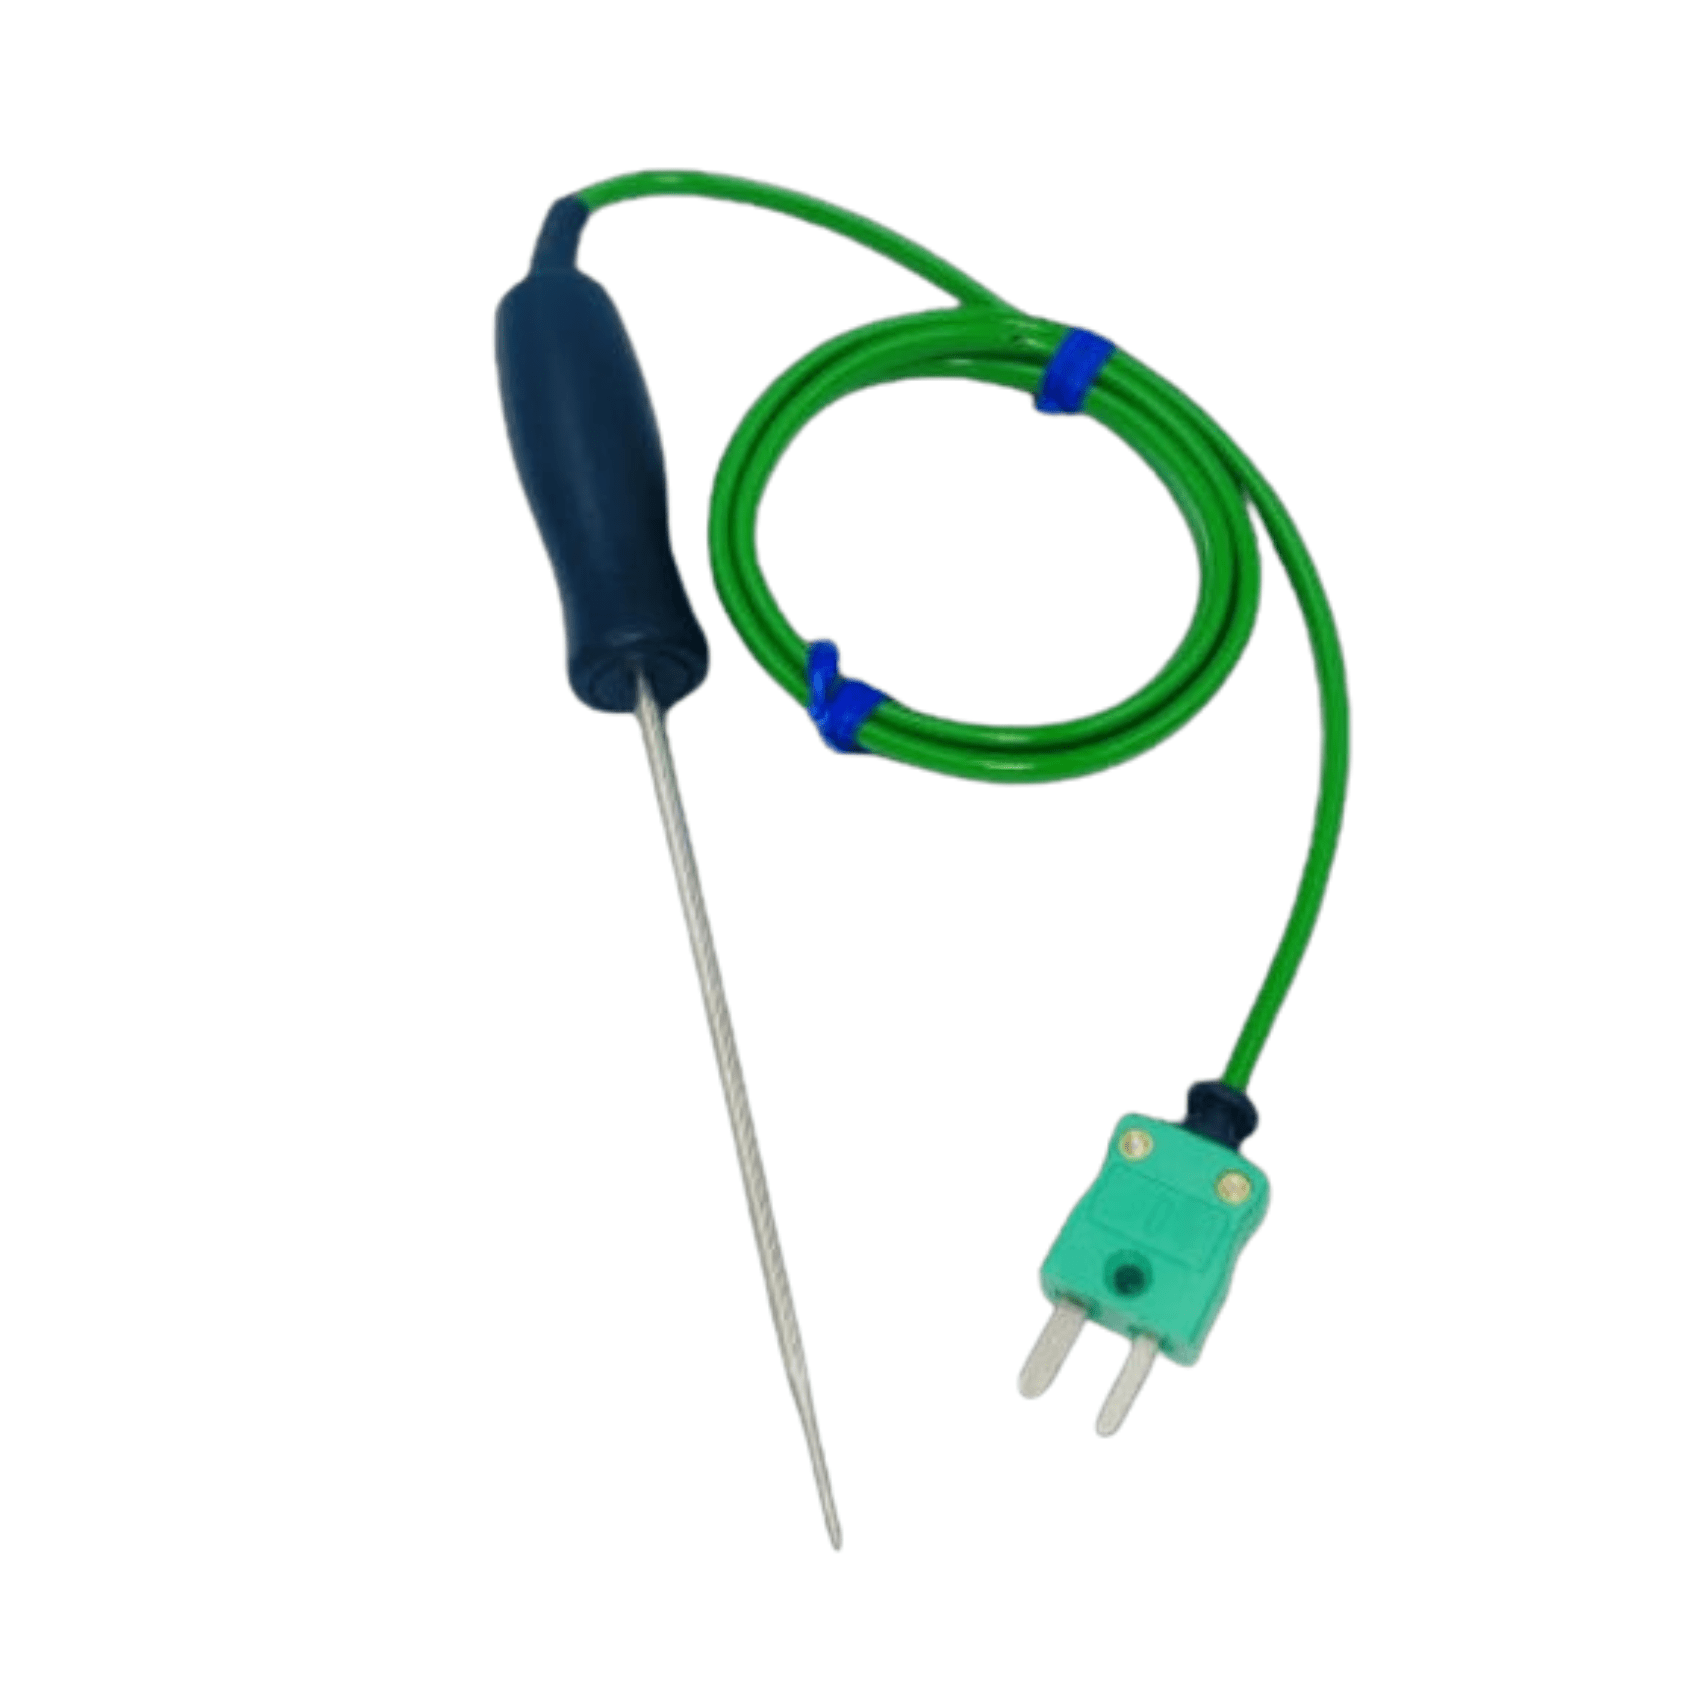 Un termometro in miniatura verde Sonda a penetrazione a risposta rapida utilizzata per misurare la temperatura, con un filo flessibile collegato da Thermometer.fr.